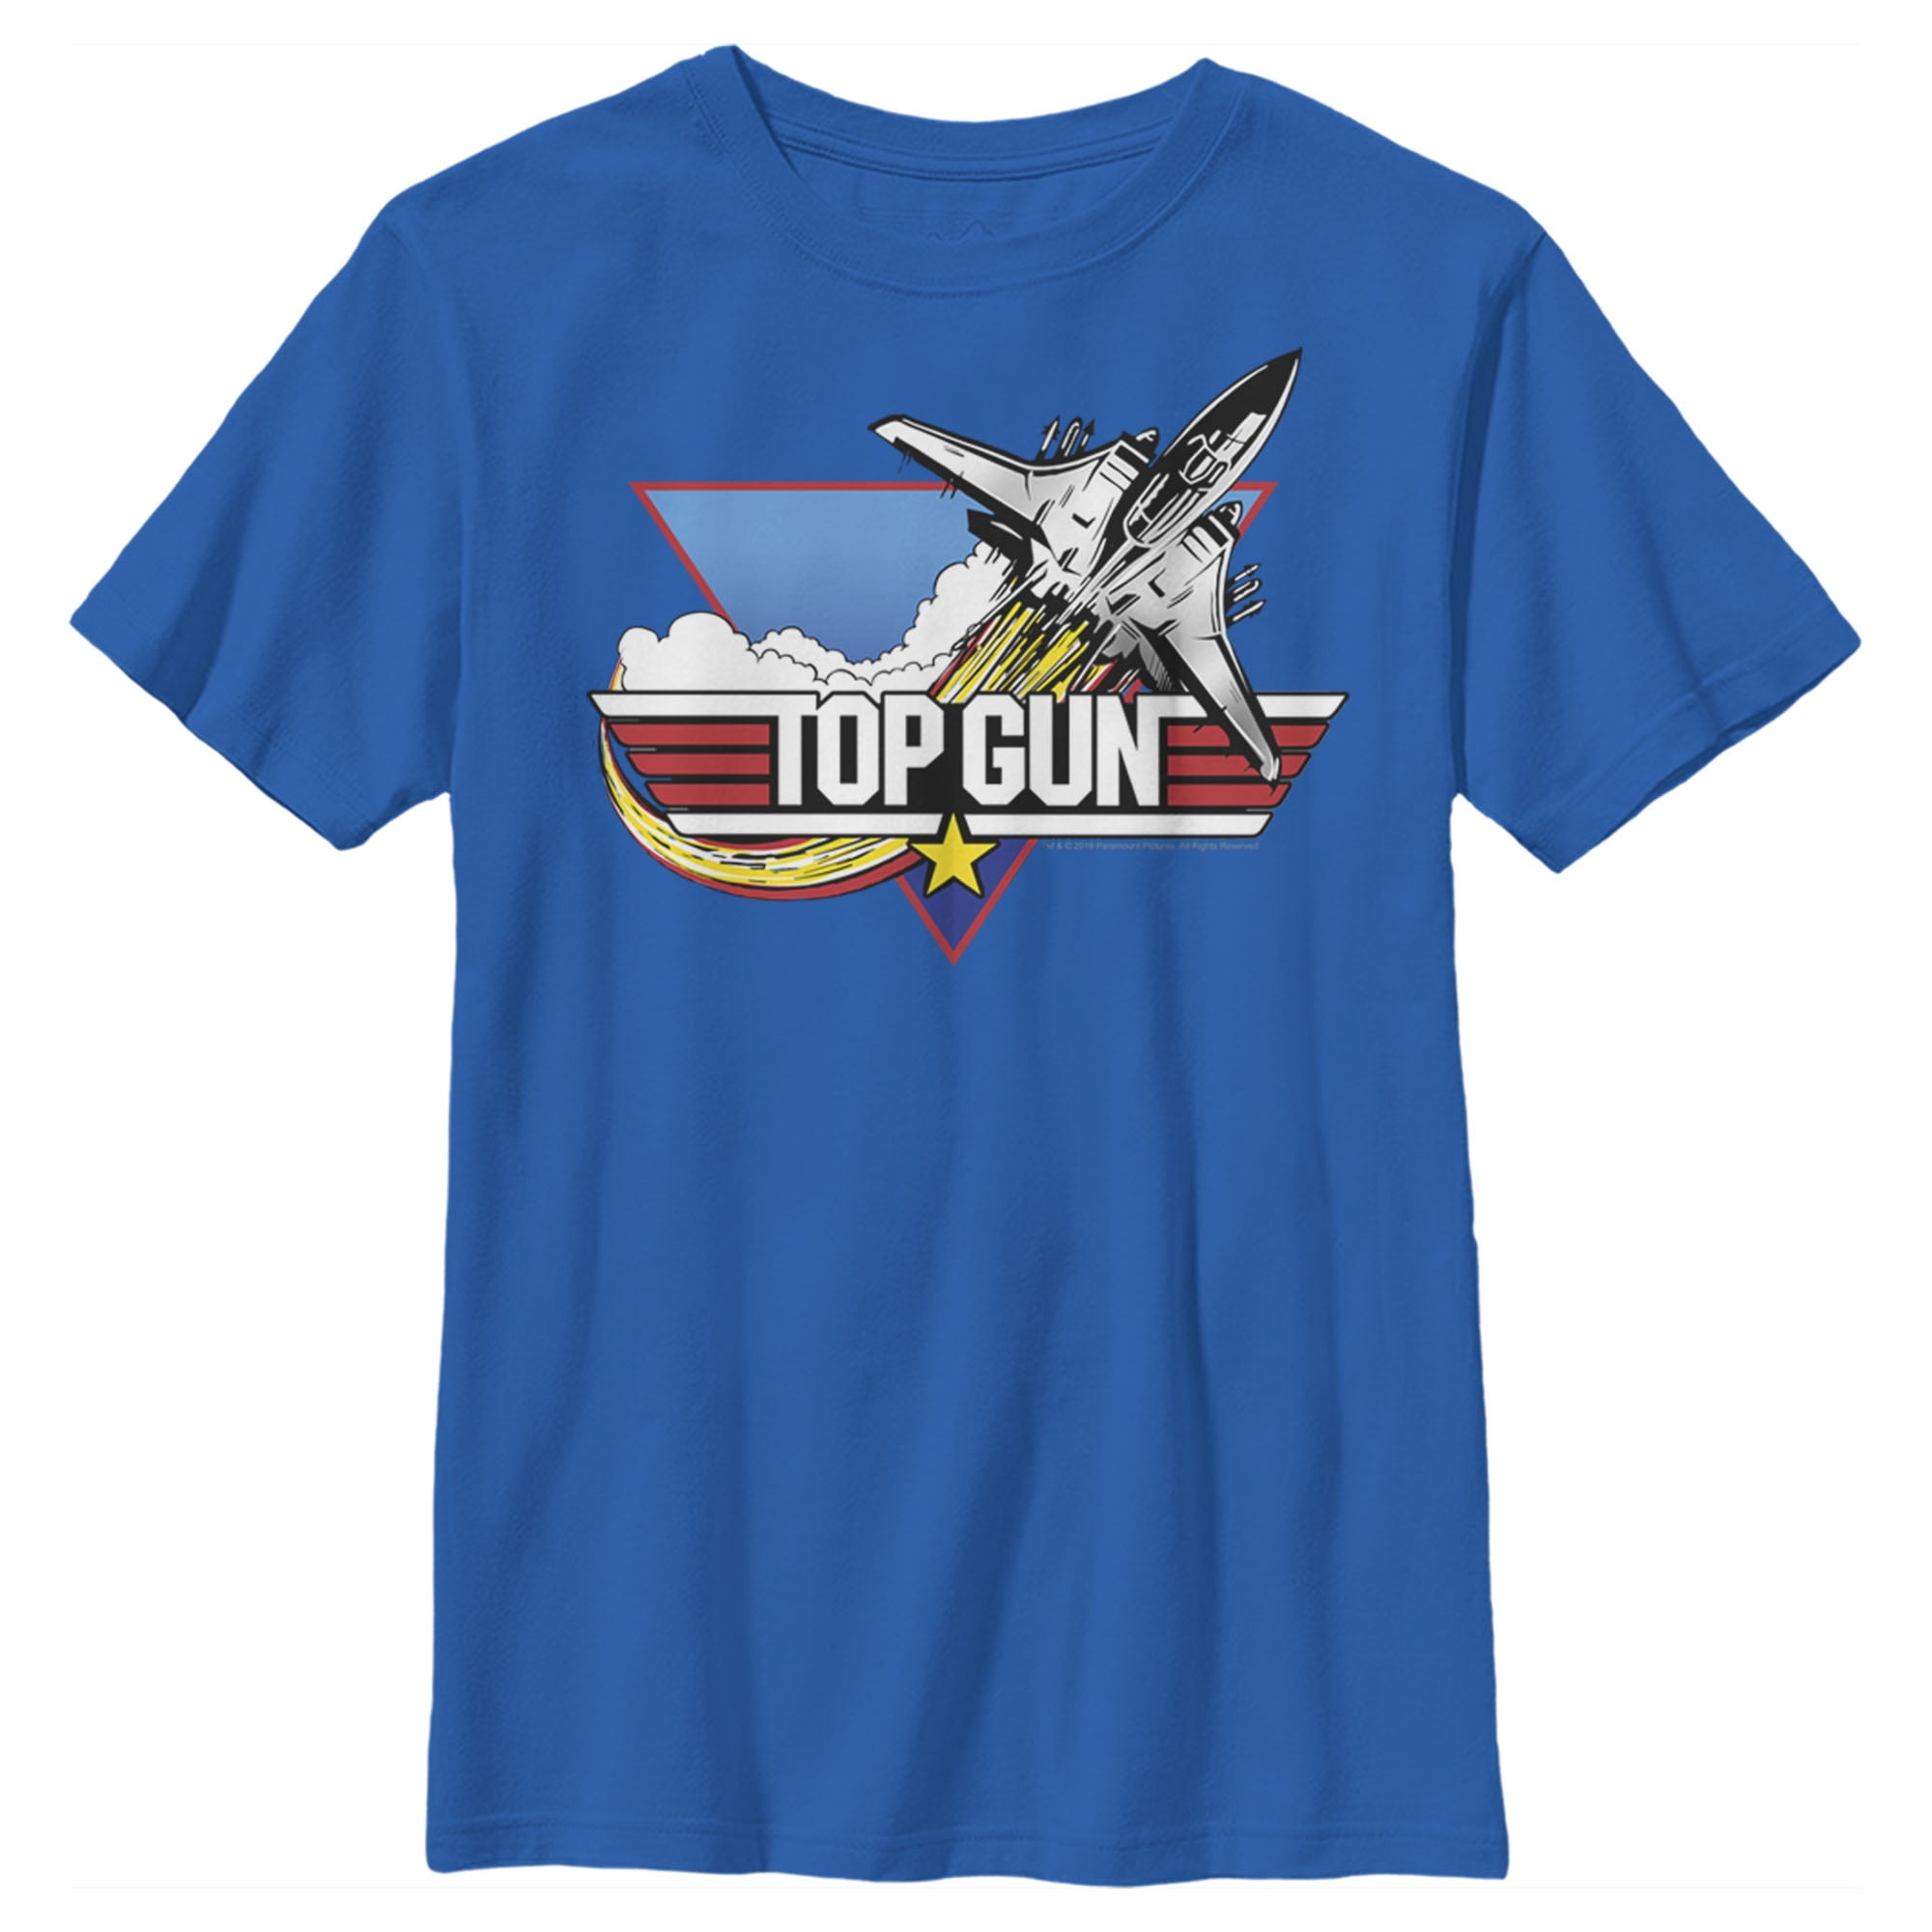 Boy's Top Gun Fighter Jet Logo Graphic Tee Black Large